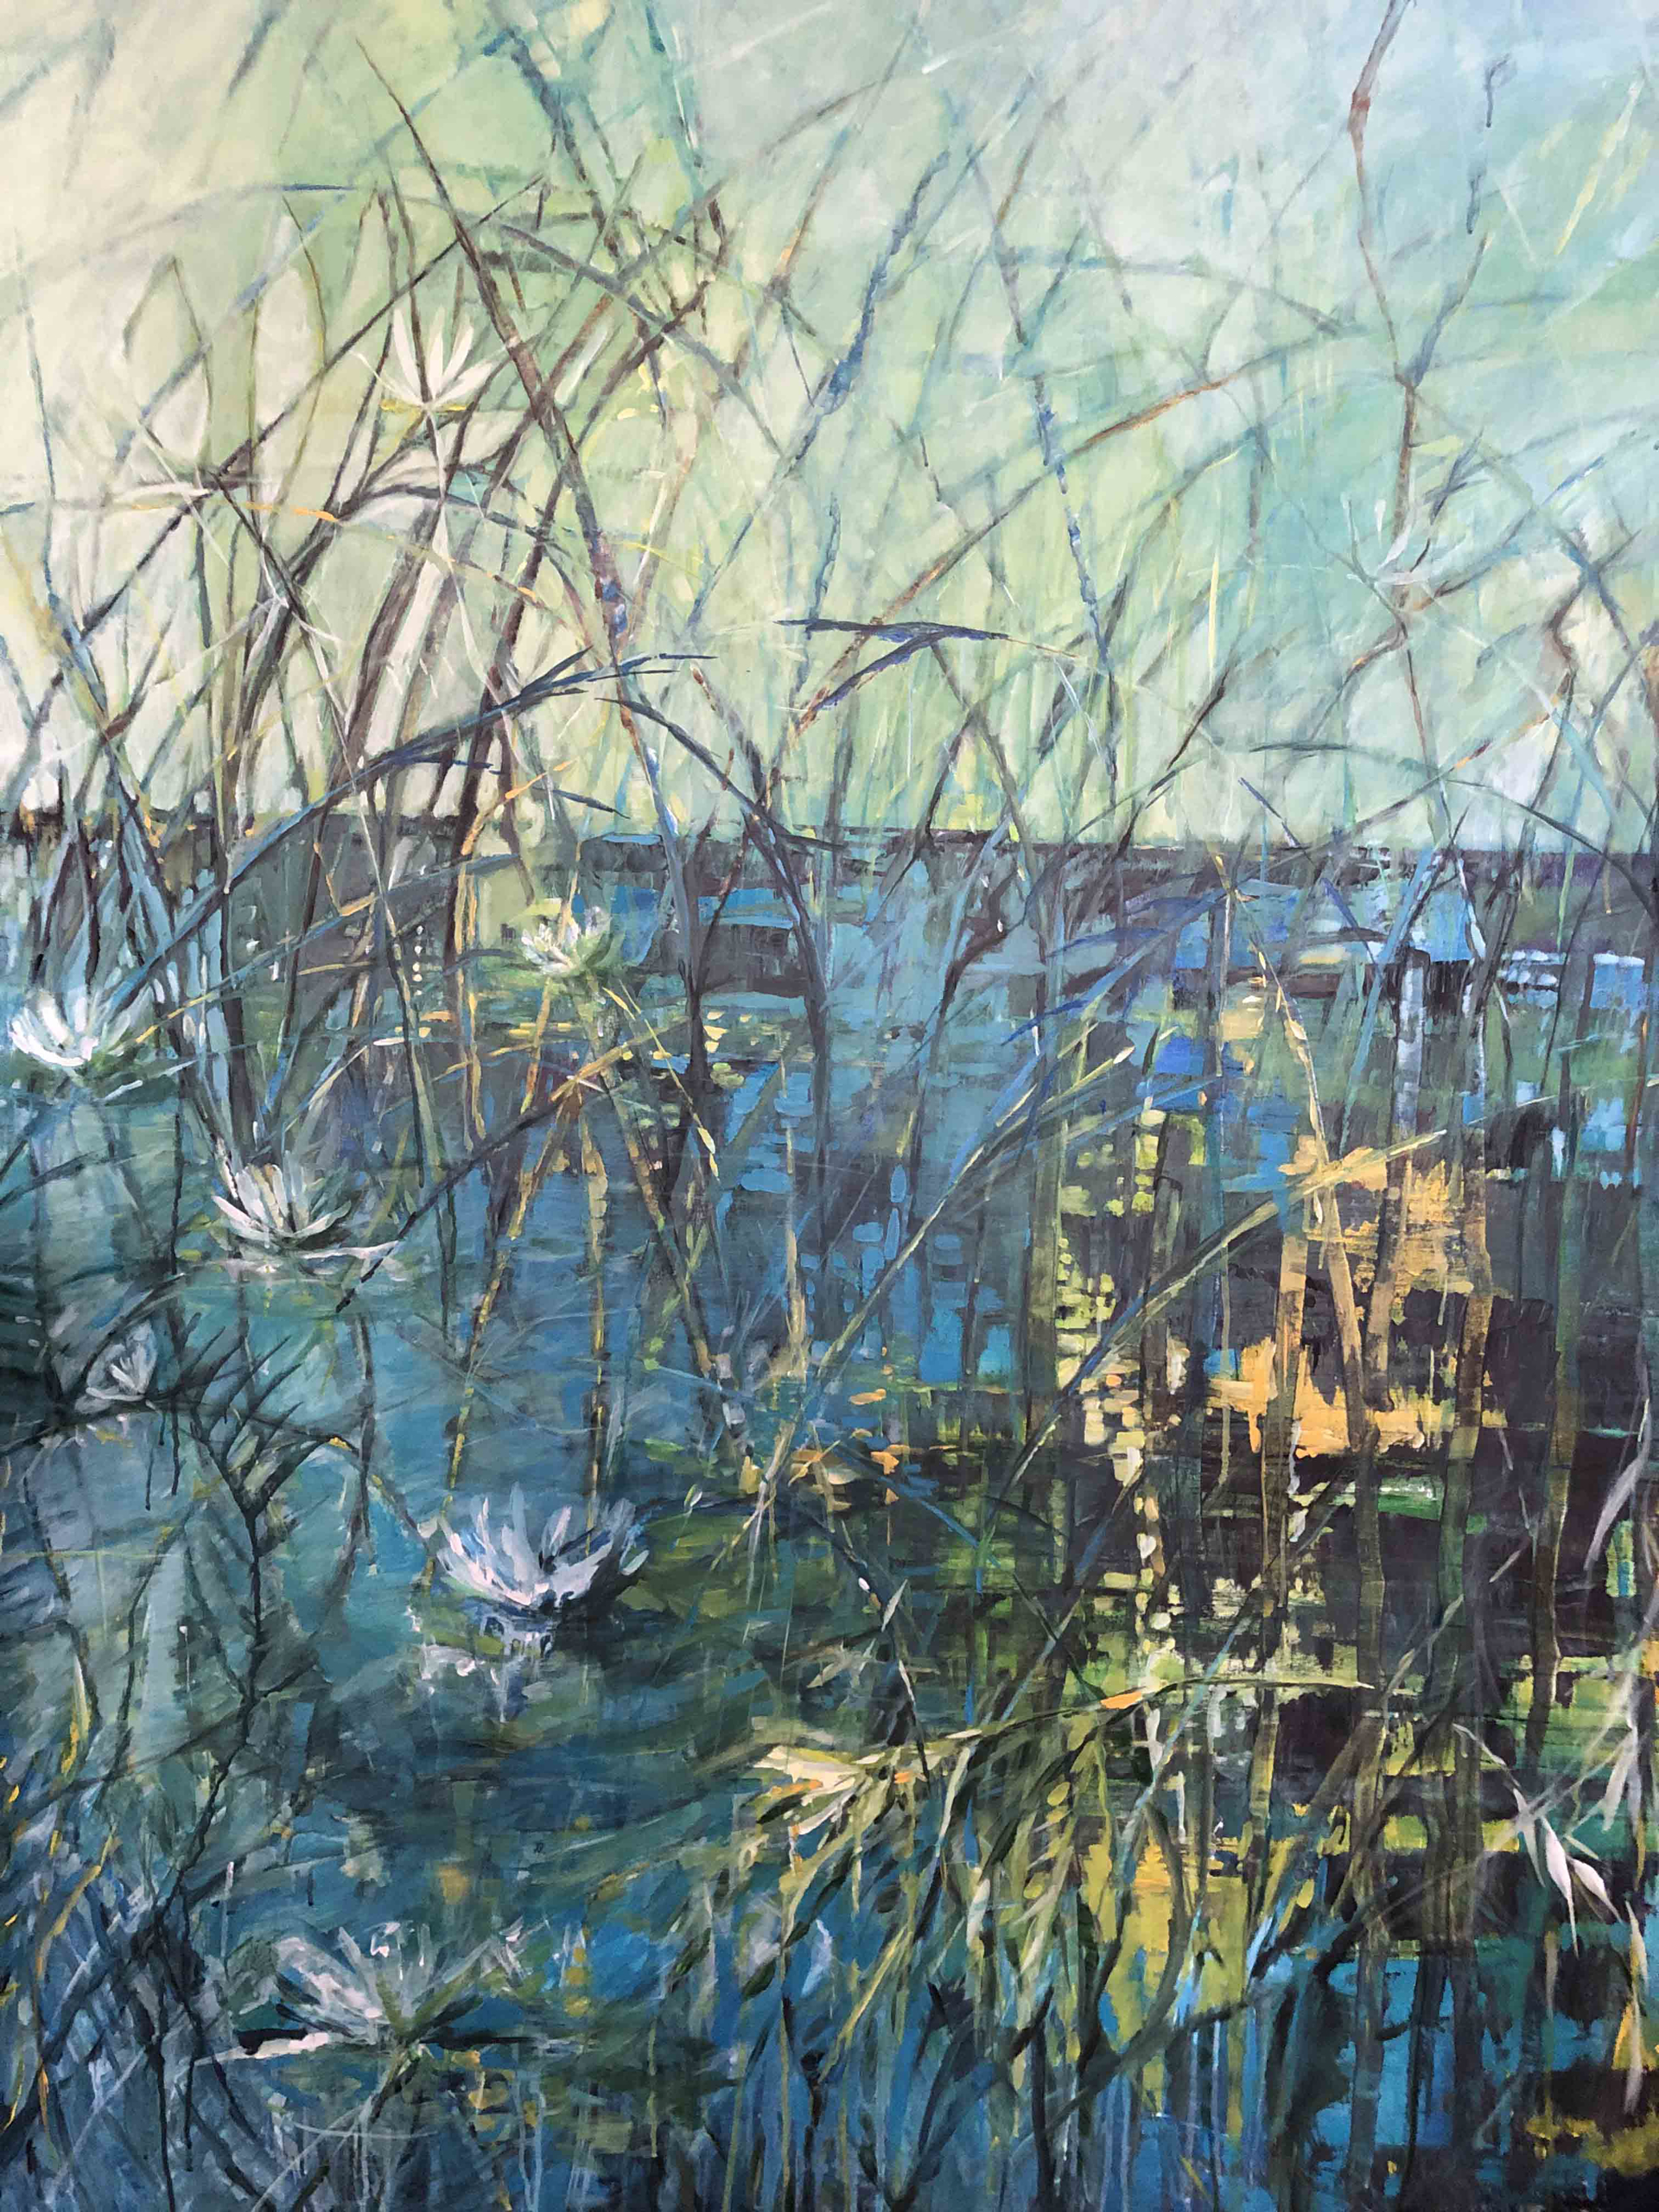 Pond in Abstraction by Marleen De Waele-De Bock